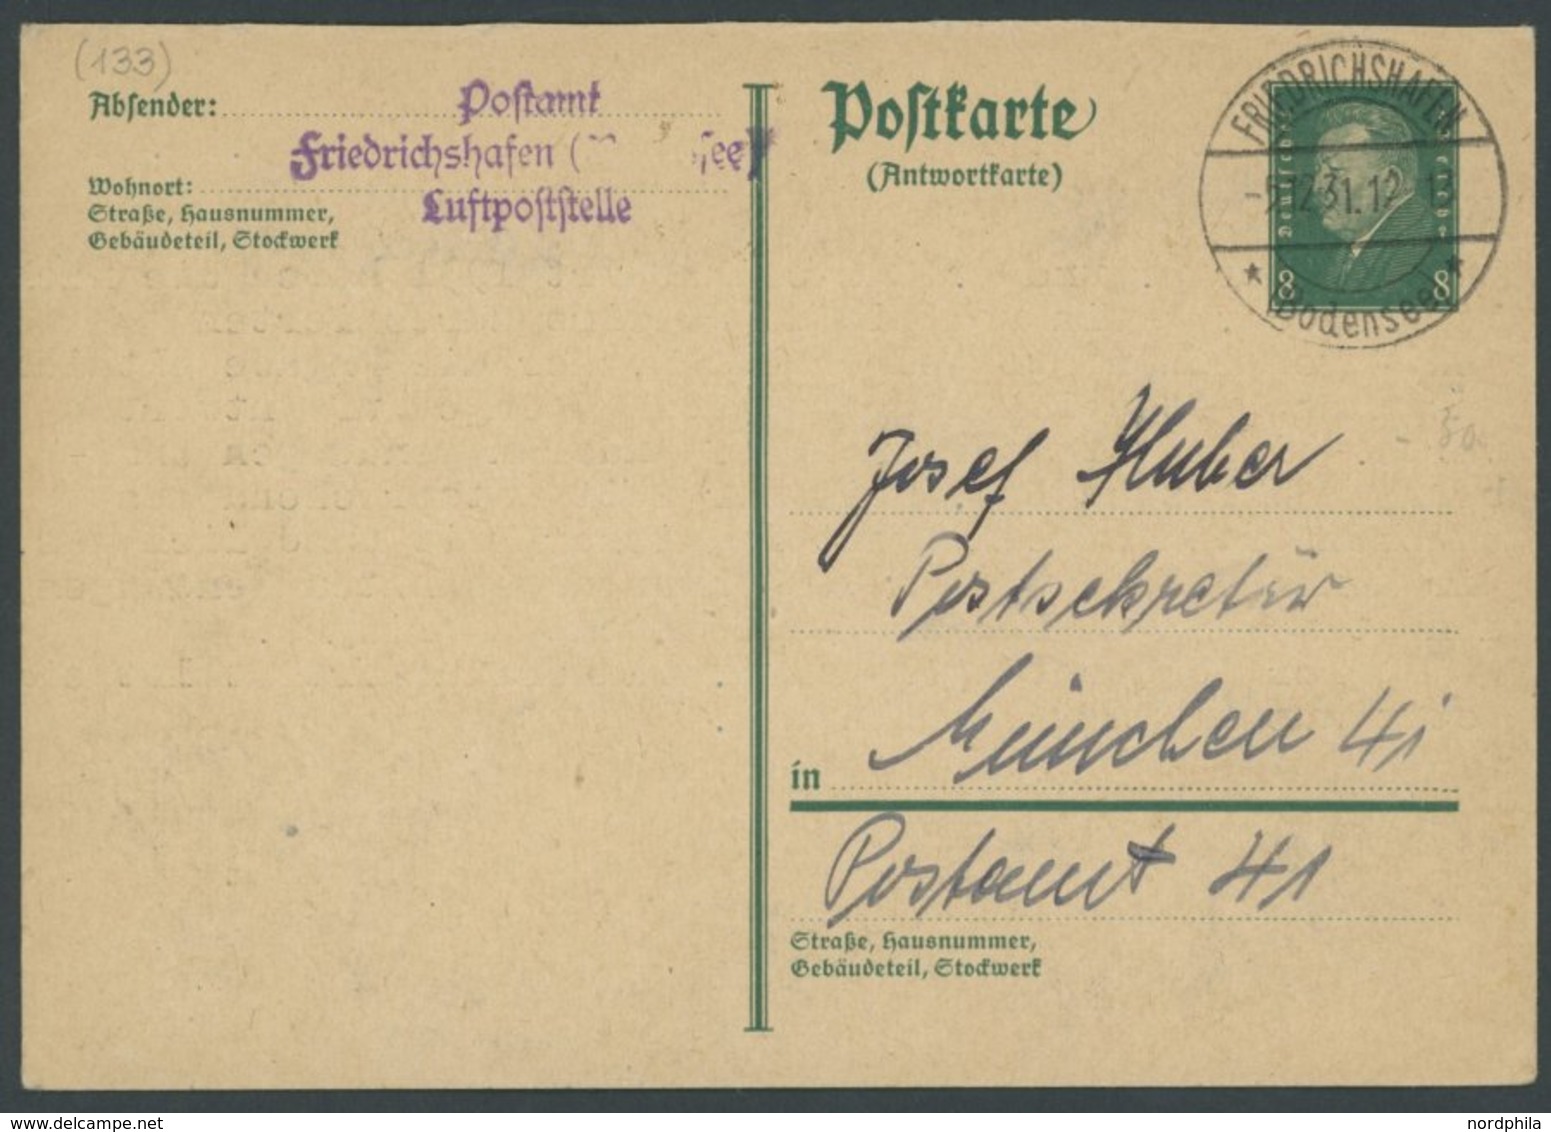 ZEPPELINPOST 1931, Friedrichshafen Luftpostelle: Antwortkarte Mit Ablehnung Einer Nachträglichen Anbringung Des Zeppelin - Zeppeline